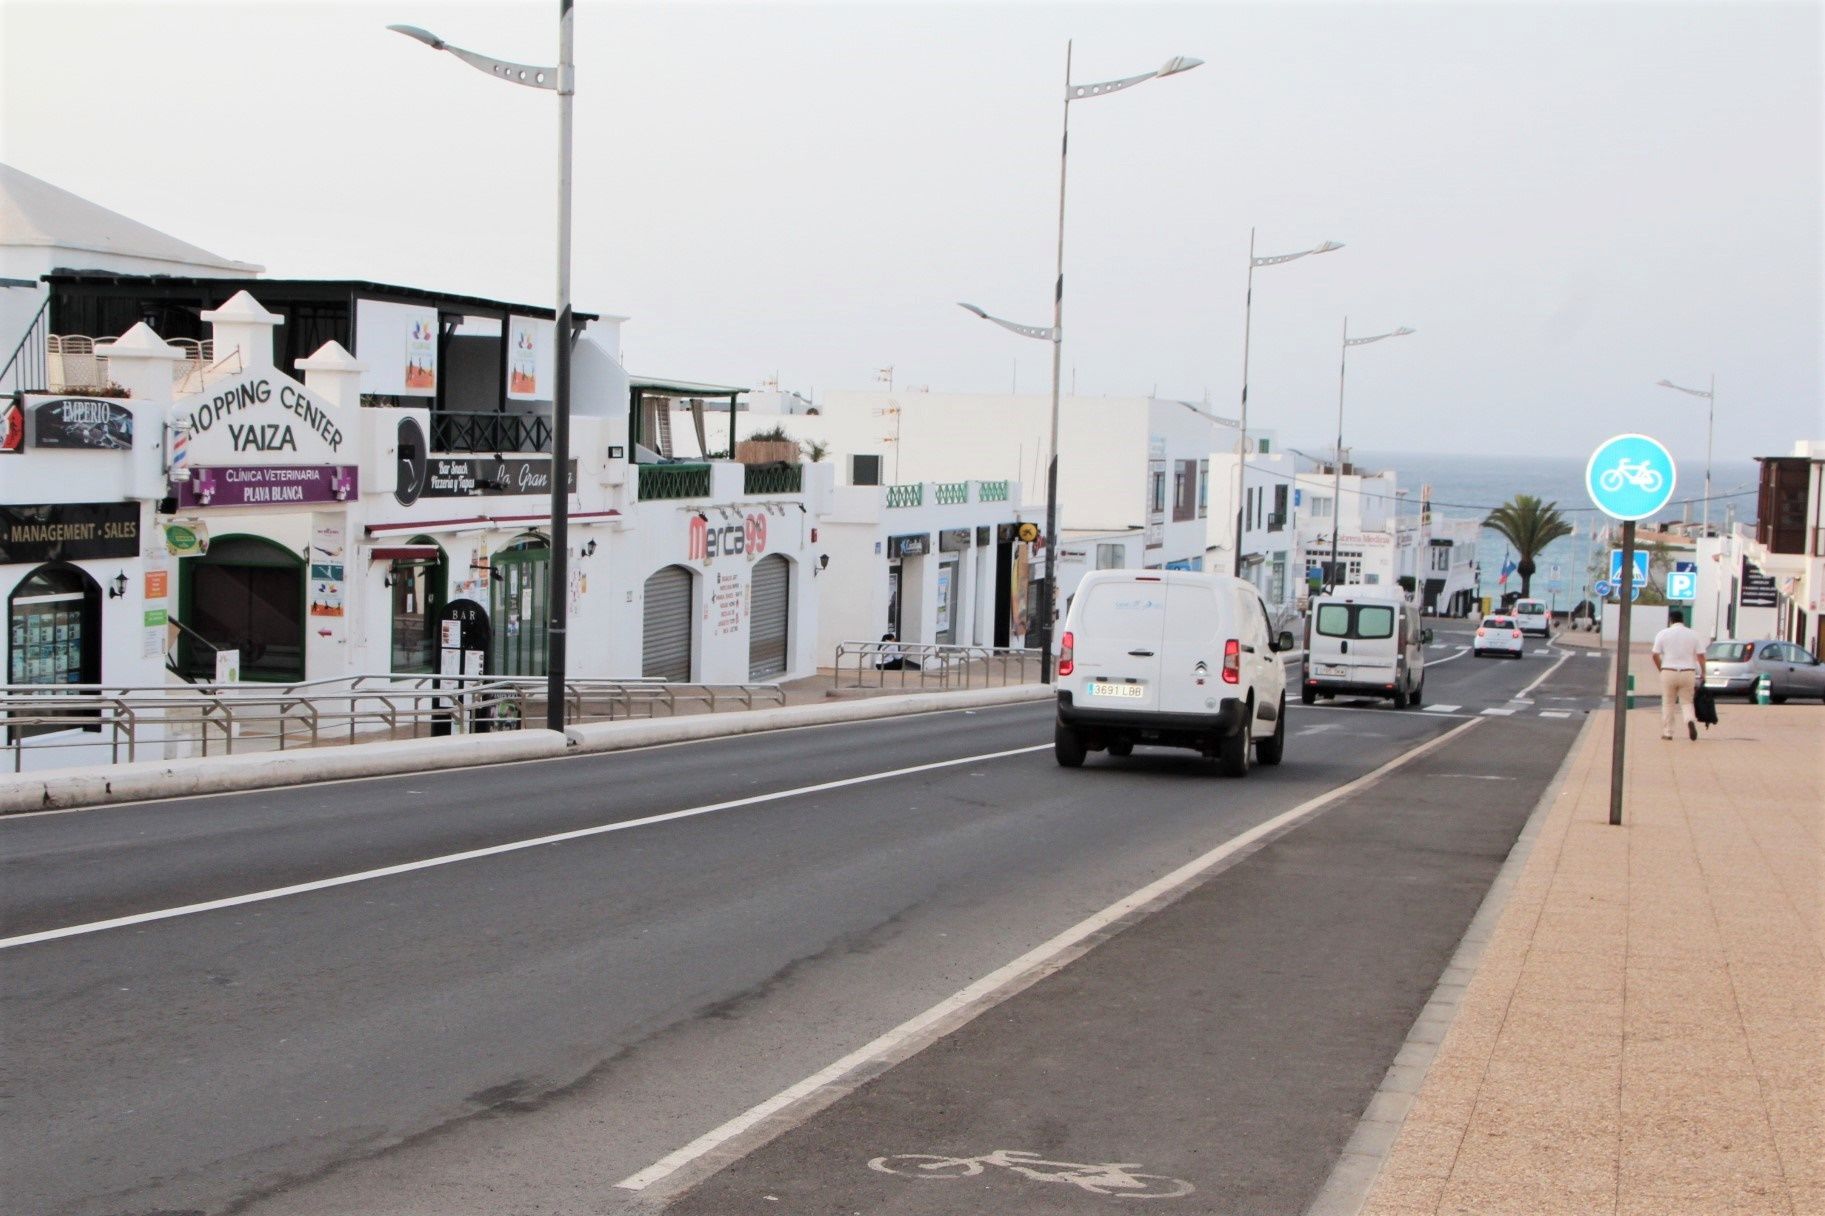  Calle Jaime Quesada de Playa Blanca, en el municipio de Yaiza 